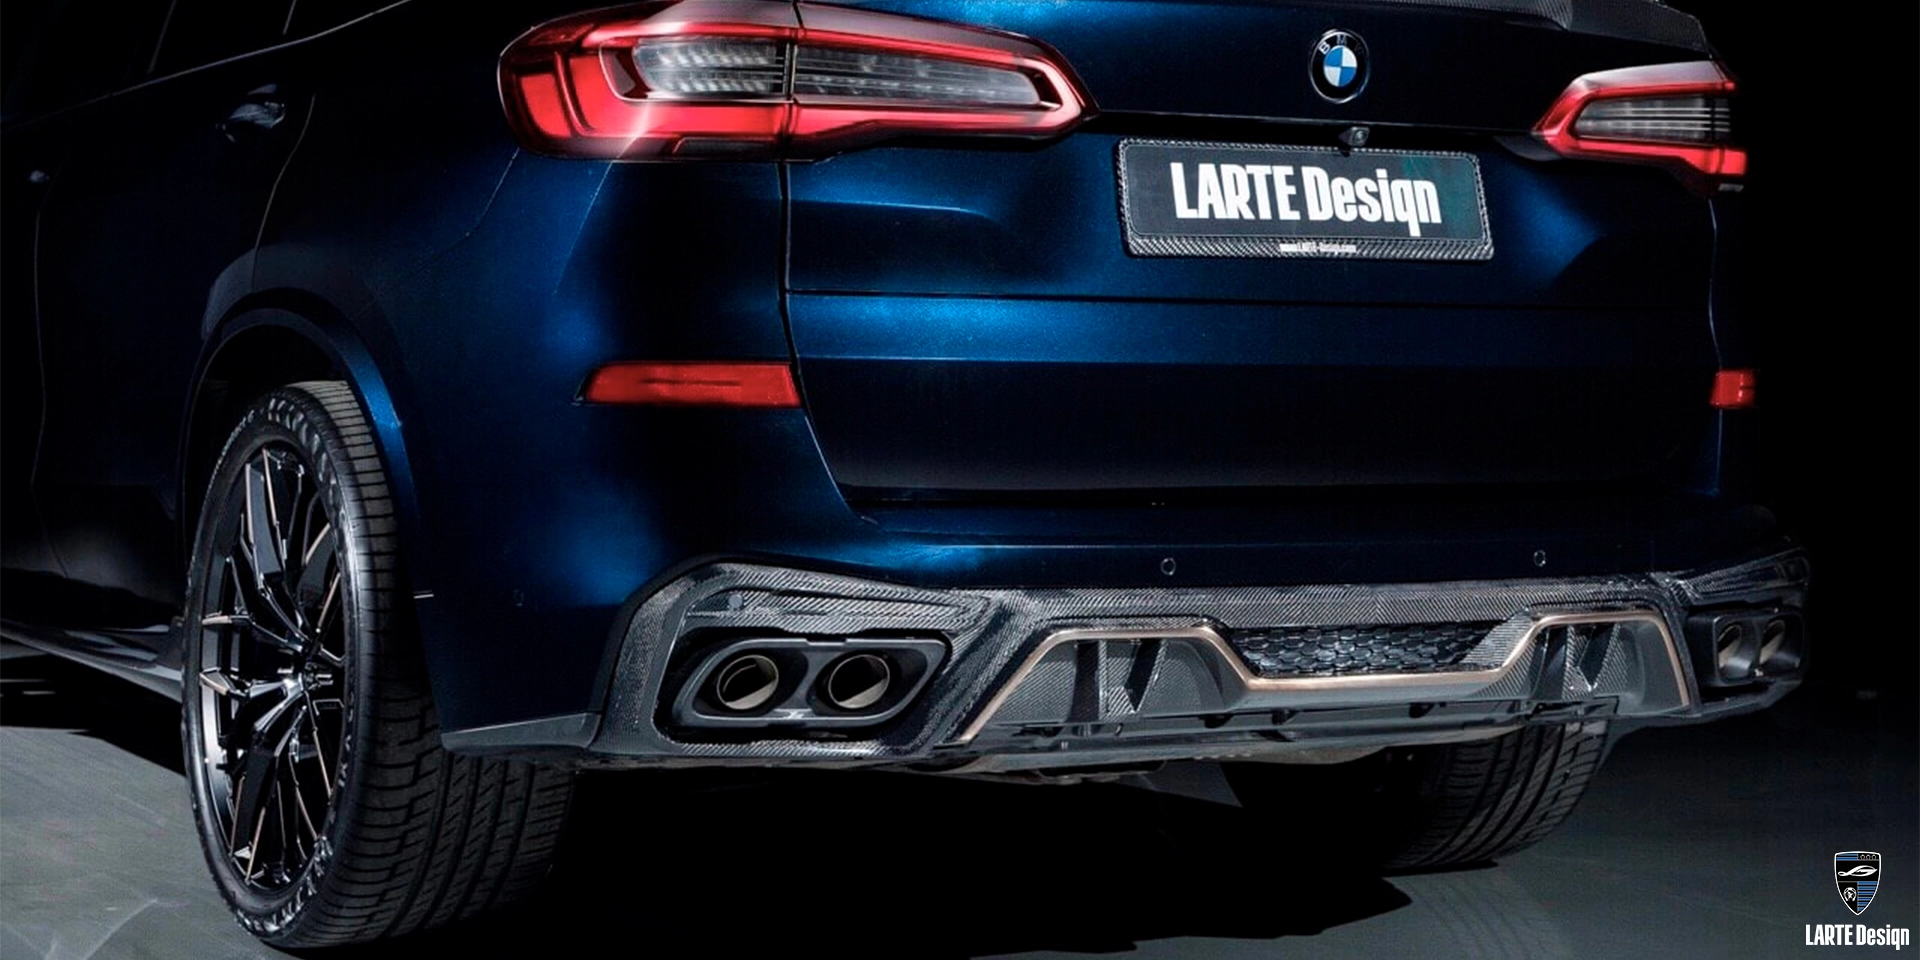 Bestellen Sie neue Auspuff-Endrohre aus Kohlefaser für den LARTE Performance BMW X5 M Sport G05 in Tanzanitblau II Metallic